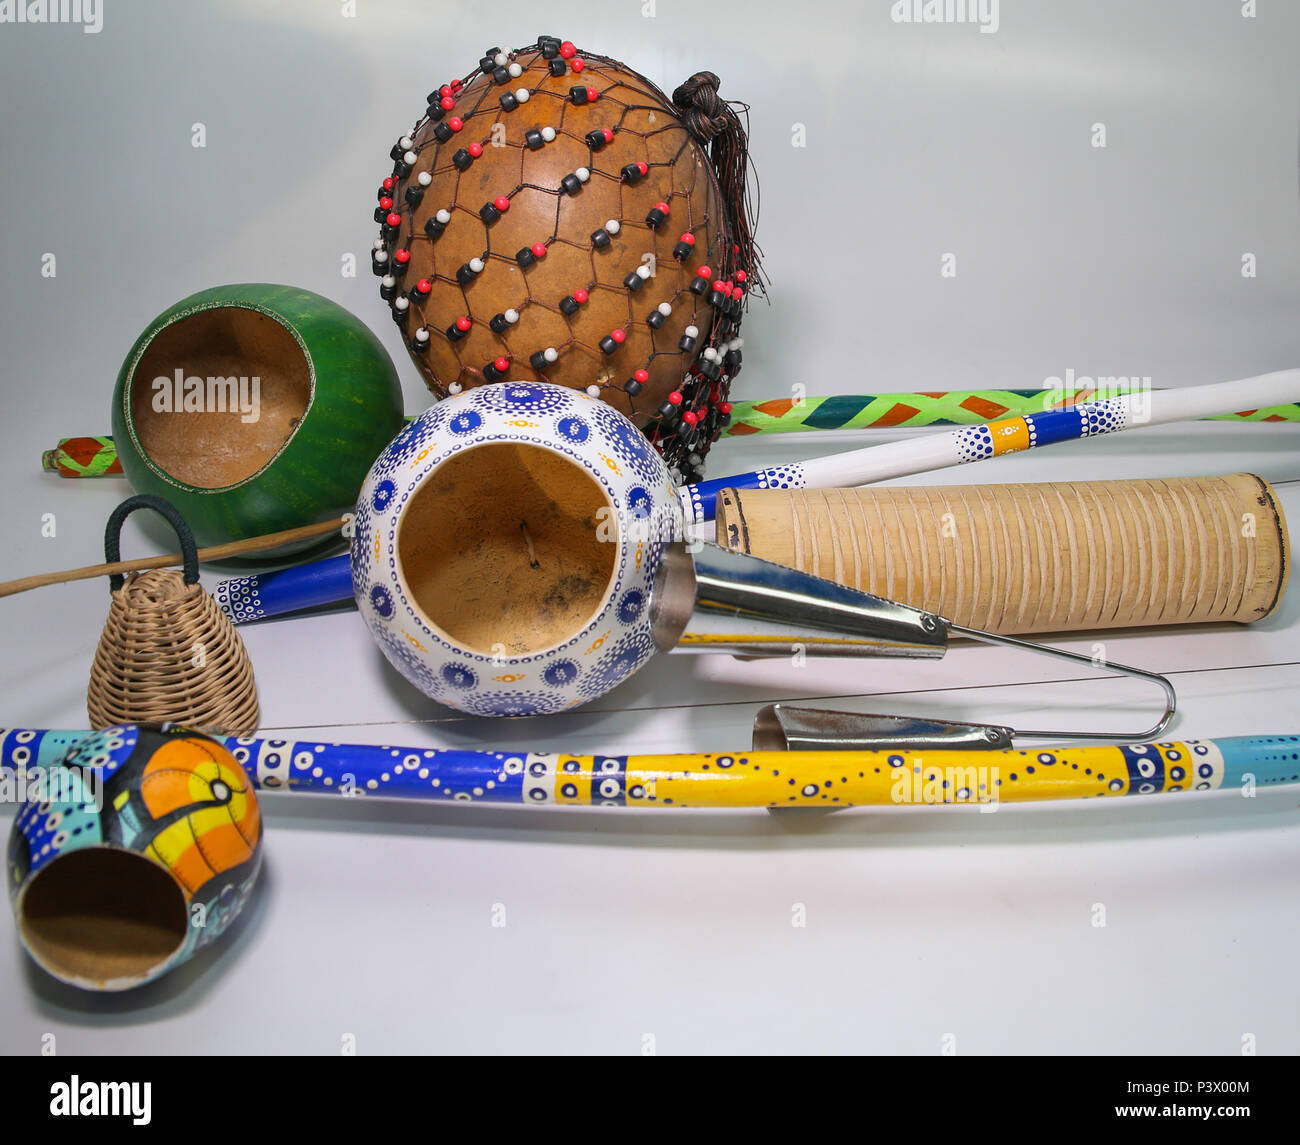 Na foto, berimbau, xequerê, reco-reco, caxixi e agogô. Instrumentos musicais utilizados no acompanhamento da capoeira. Stock Photo